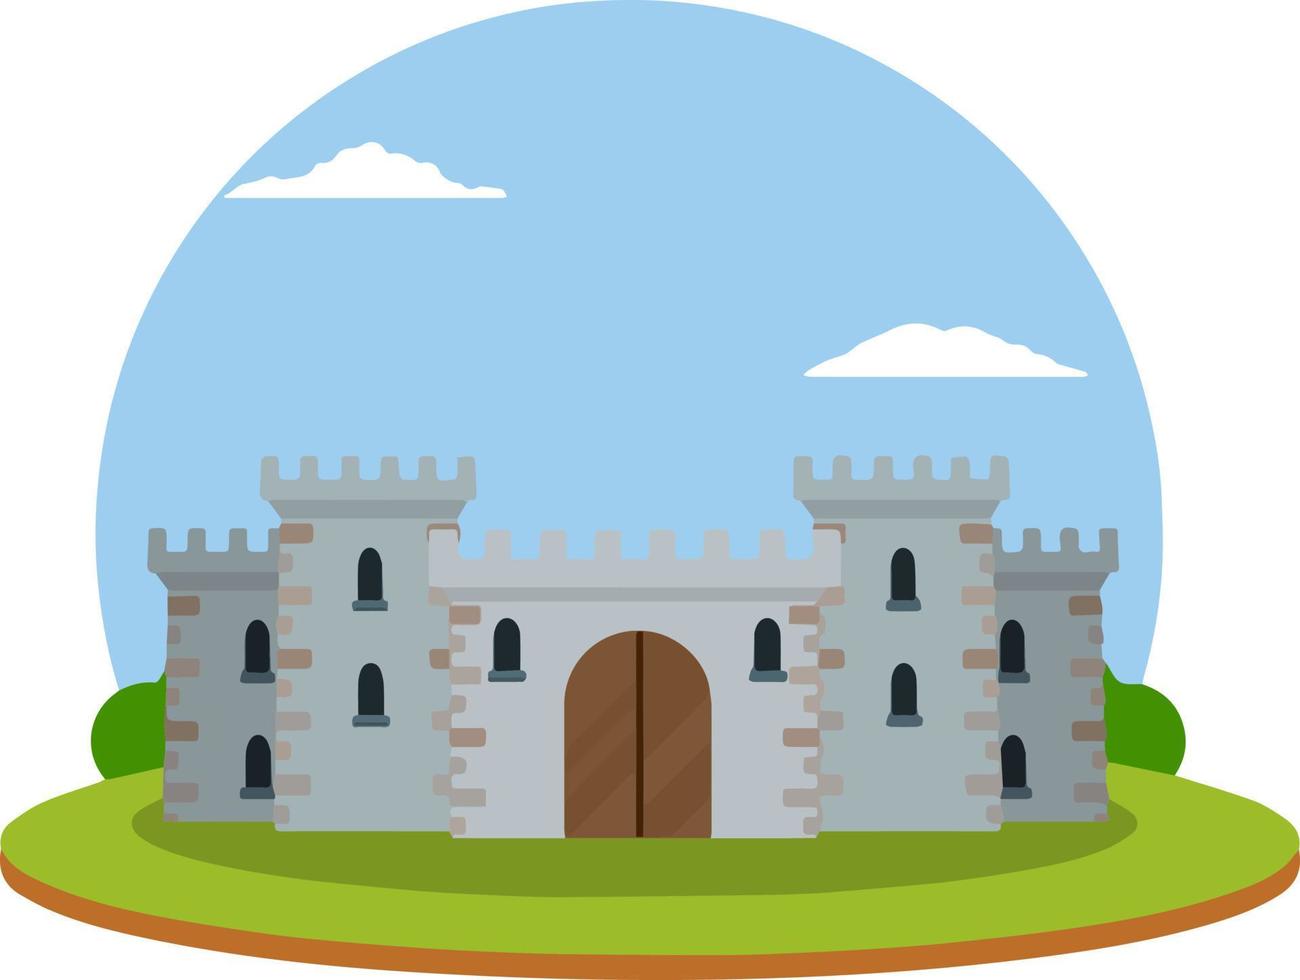 medeltida europeisk stenslott. riddarfästning. begreppet säkerhet, skydd och försvar. tecknad platt illustration. militär byggnad med murar, portar och stort torn. vektor